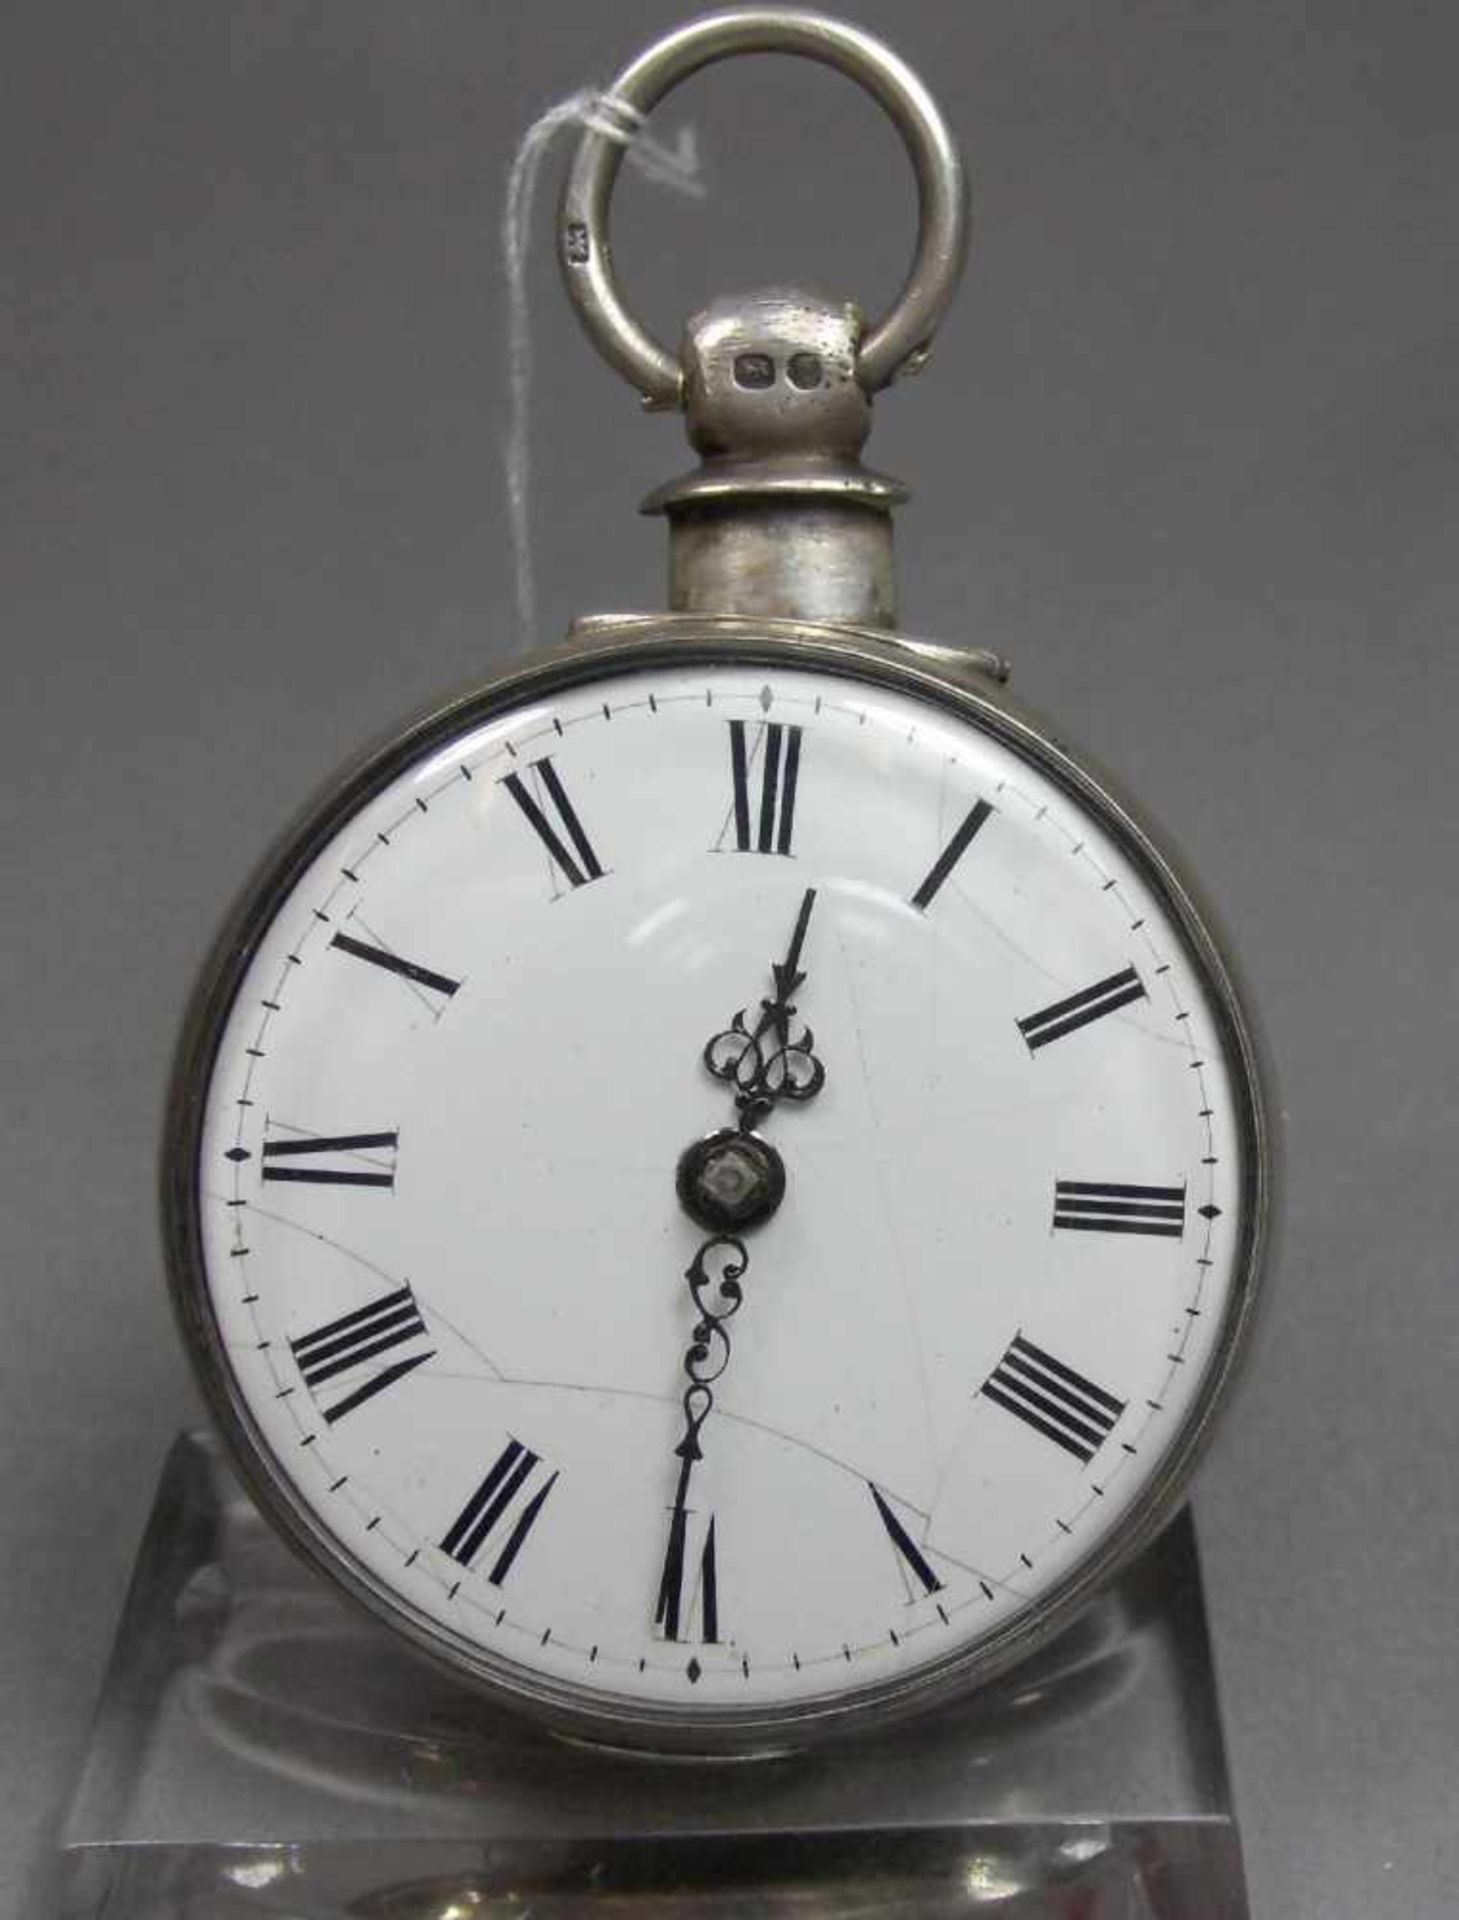 SPINDELTASCHENUHR MIT DOPPELSCHALEN-GEHÄUSE / pocket watch with pair case, Uhrengehäuse gem. " - Image 7 of 11